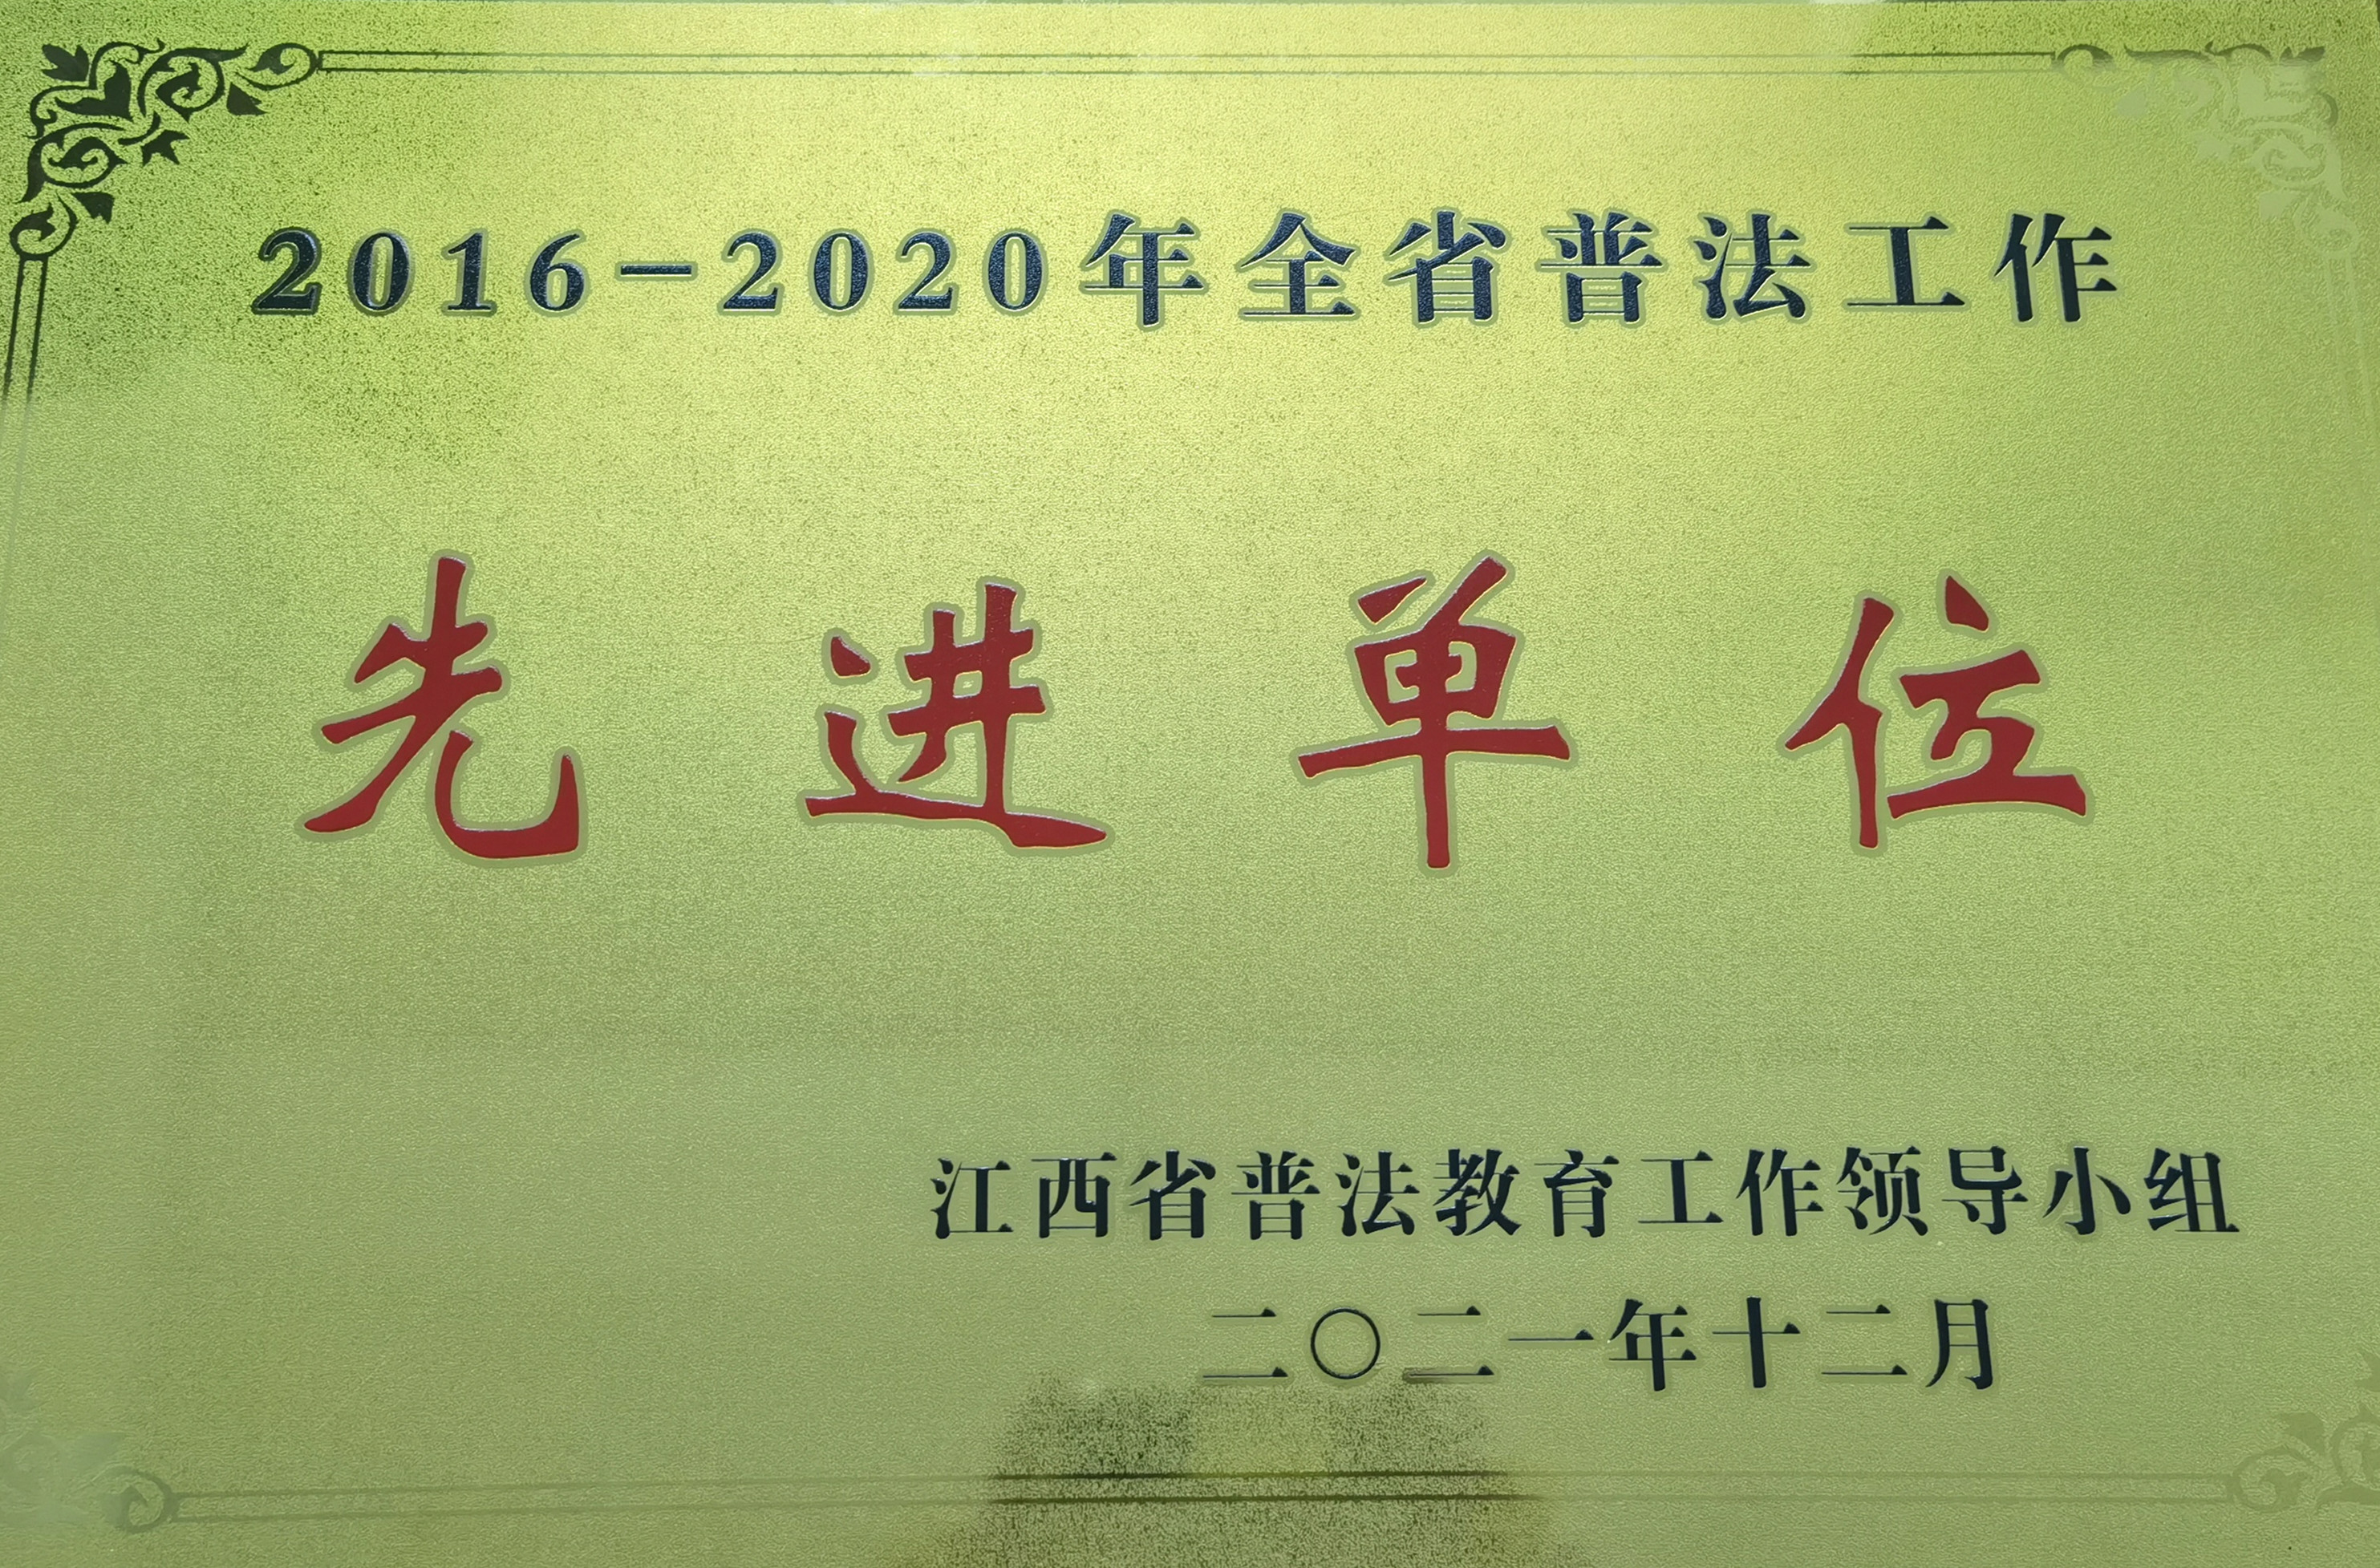 江西省水务集团荣获“2016-2020年全省普法工作先进单位”称号